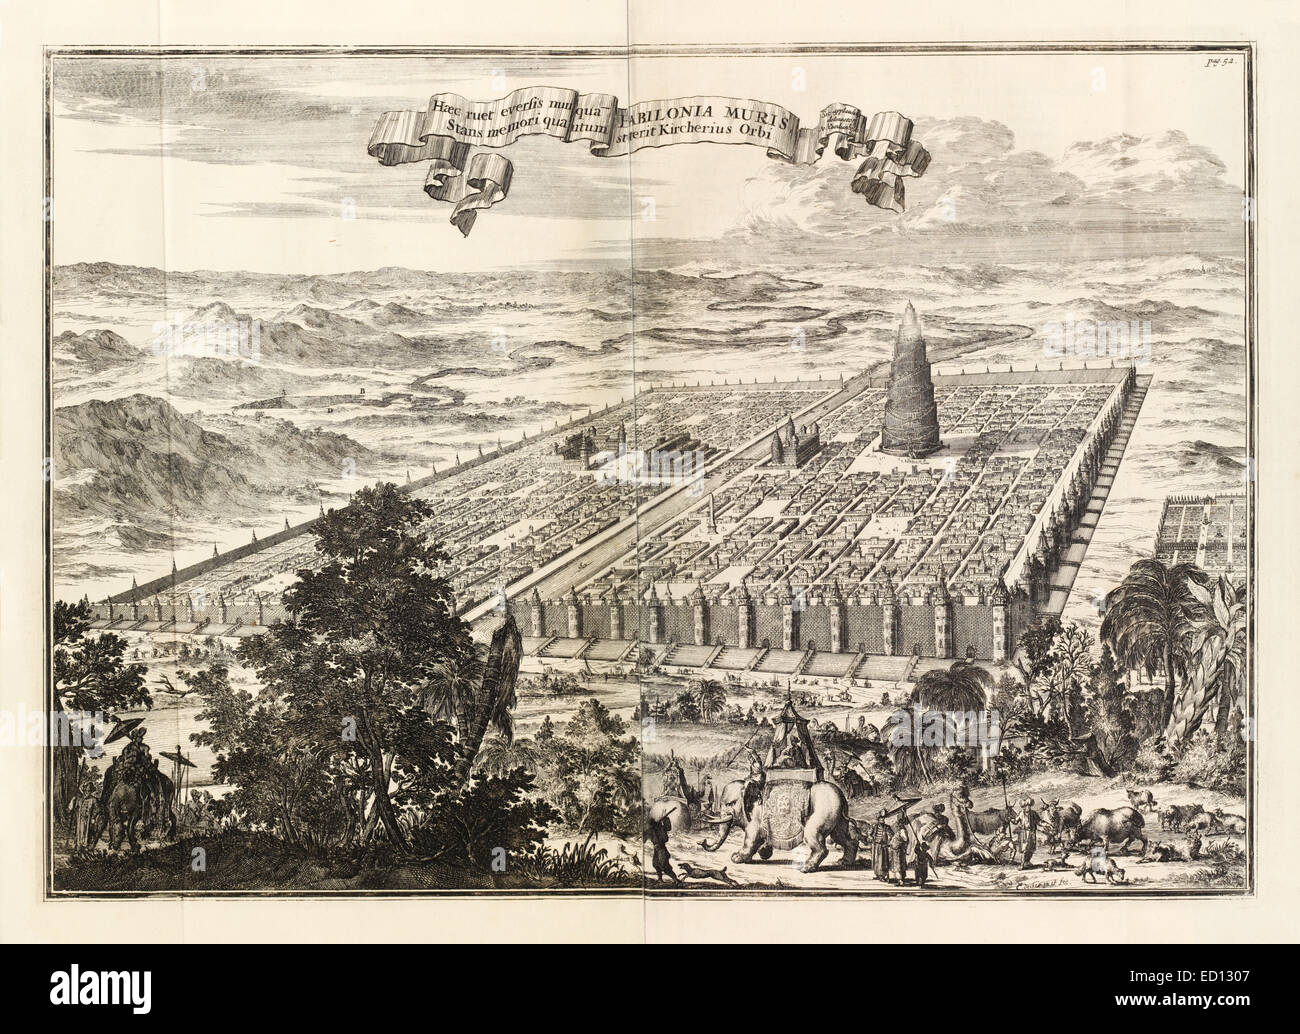 17ème siècle illustration de la Babylonie montrant les jardins suspendus (centre gauche) et la Tour de Babel. Voir la description pour plus d'informations. Banque D'Images